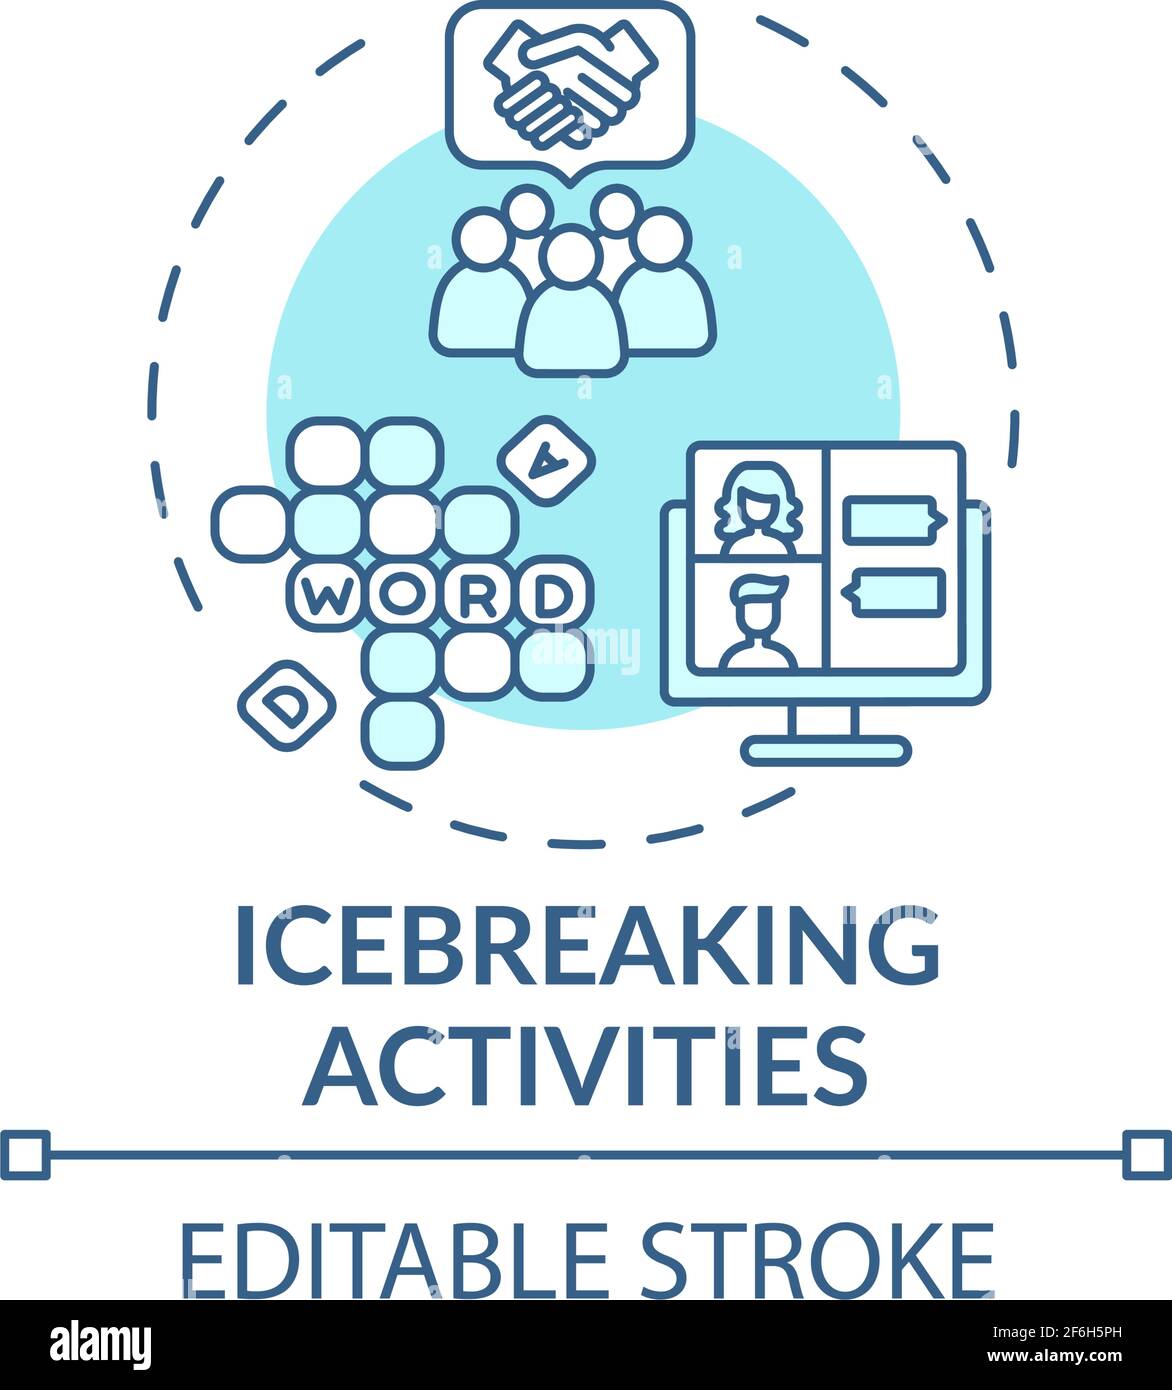 Icebreaking activities concept icon Stock Vector